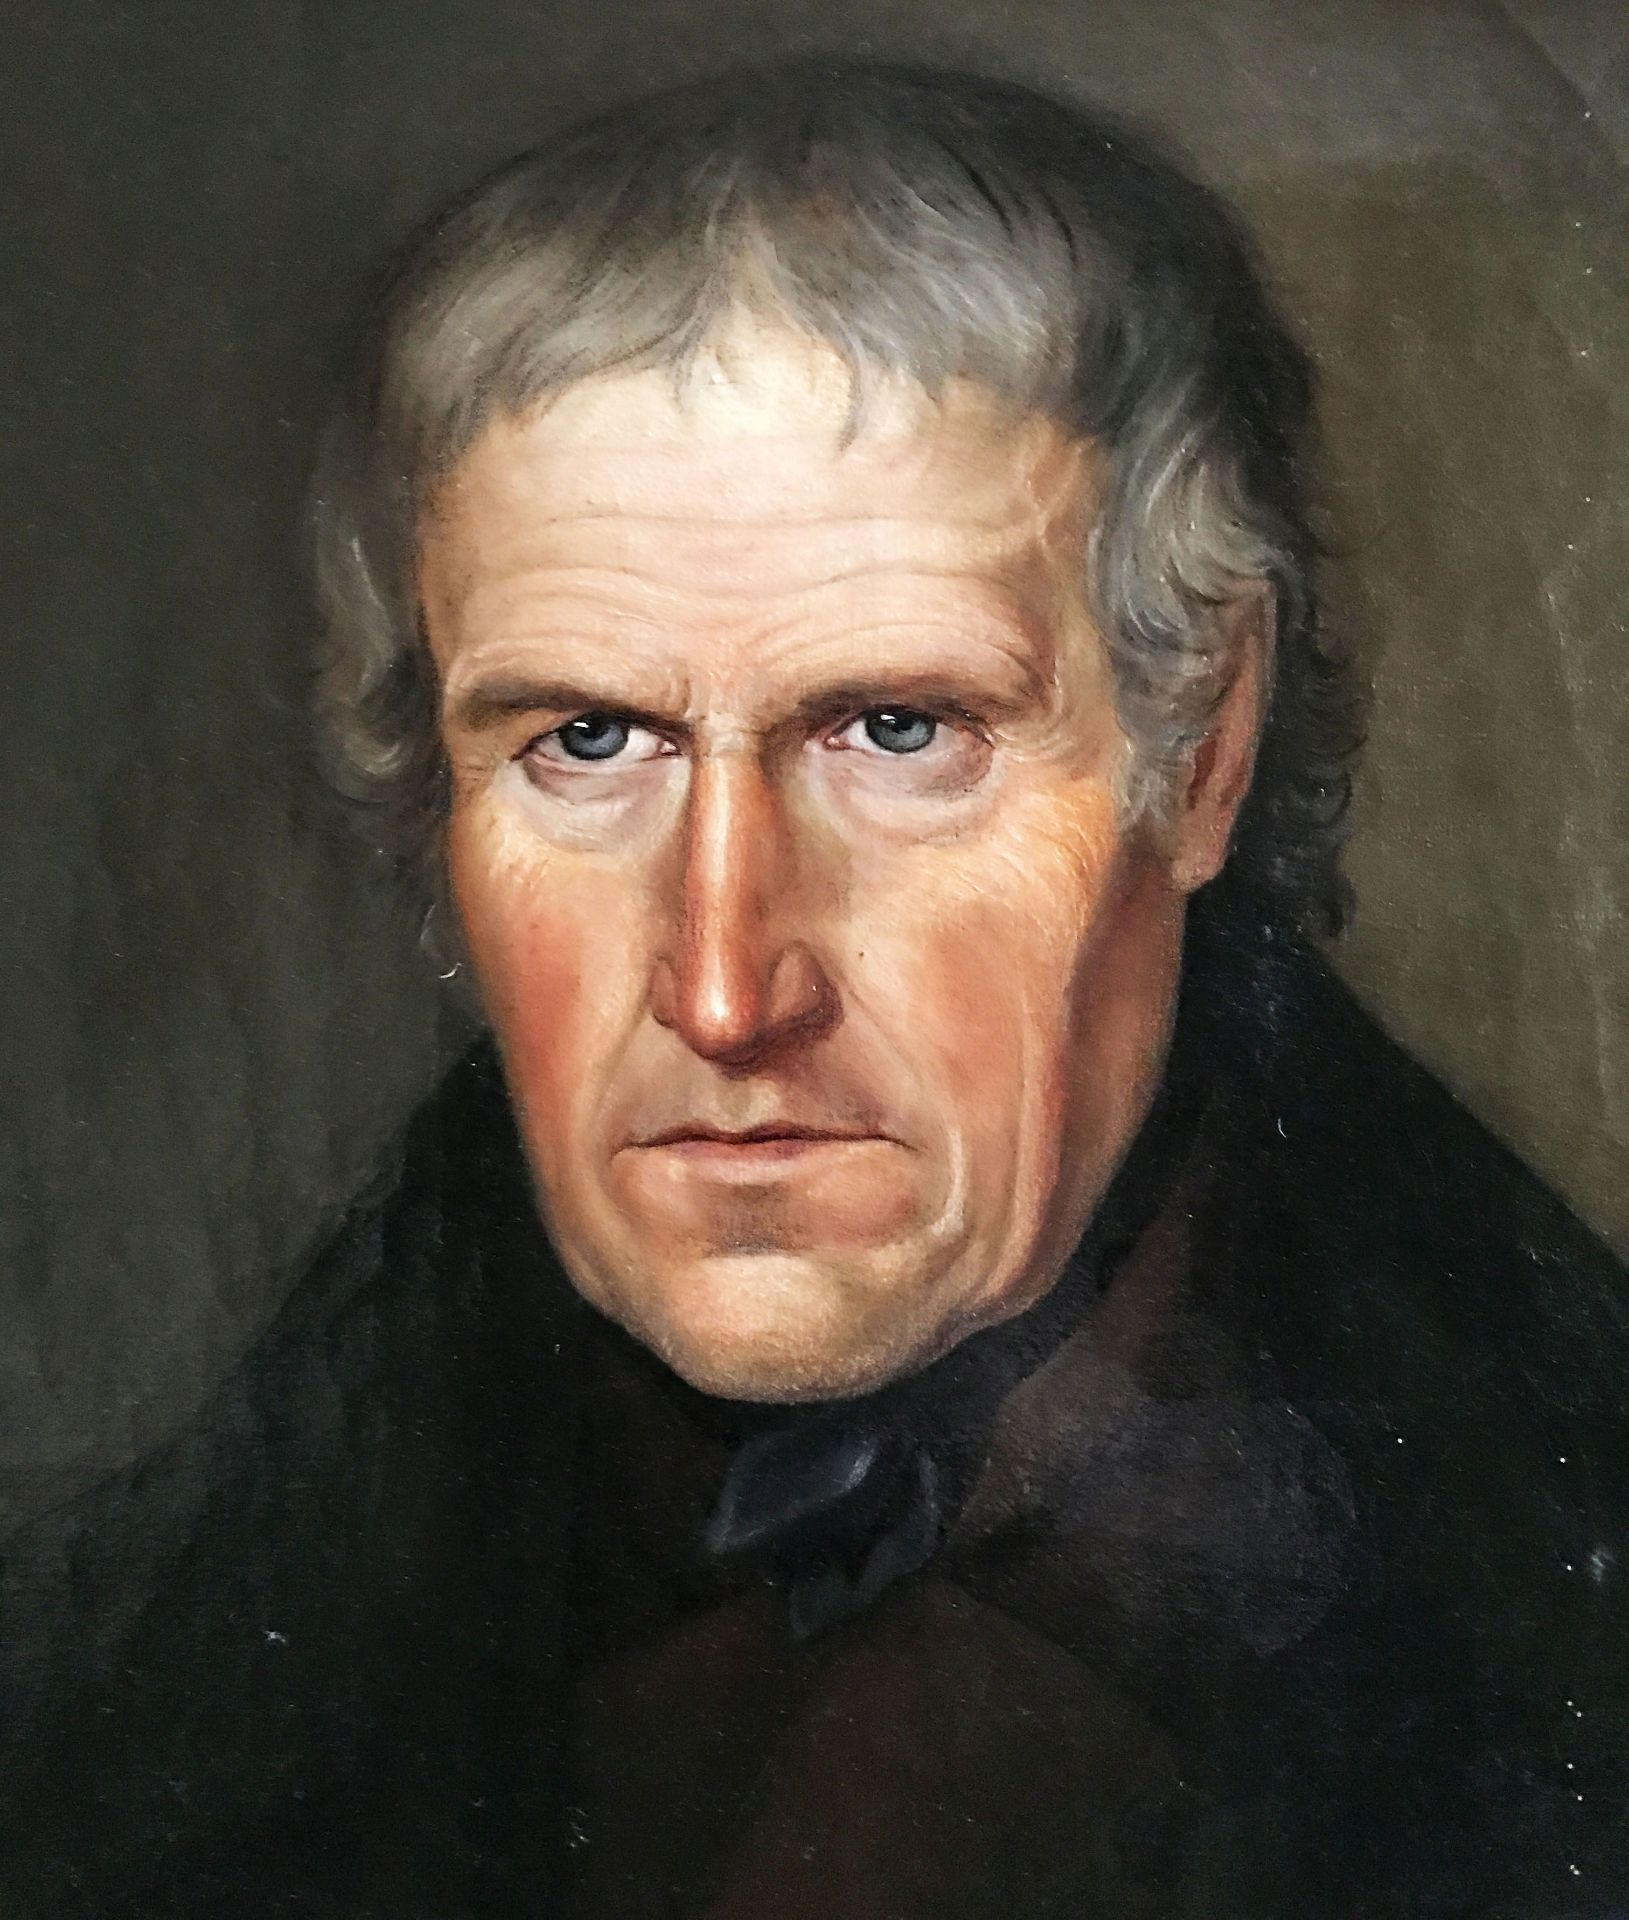 Portrait eines älteren Herren in dunkler Kleidung, mit grauem Haar und intensivem Blick, rücks. dat. - Bild 3 aus 6